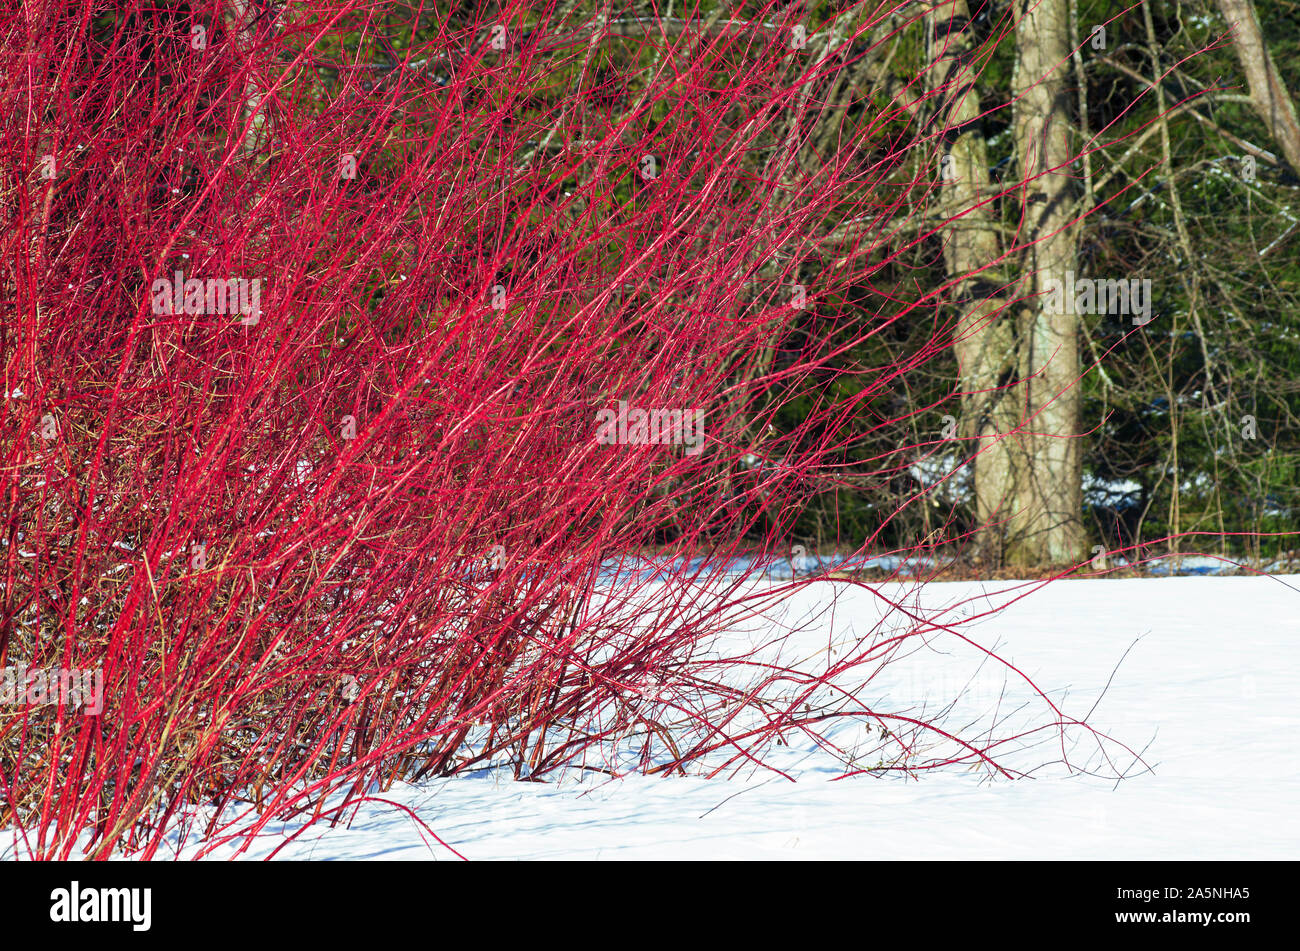 Paisaje invernal con un arbusto de sauce rojo con varillas largas entre la nieve Foto de stock